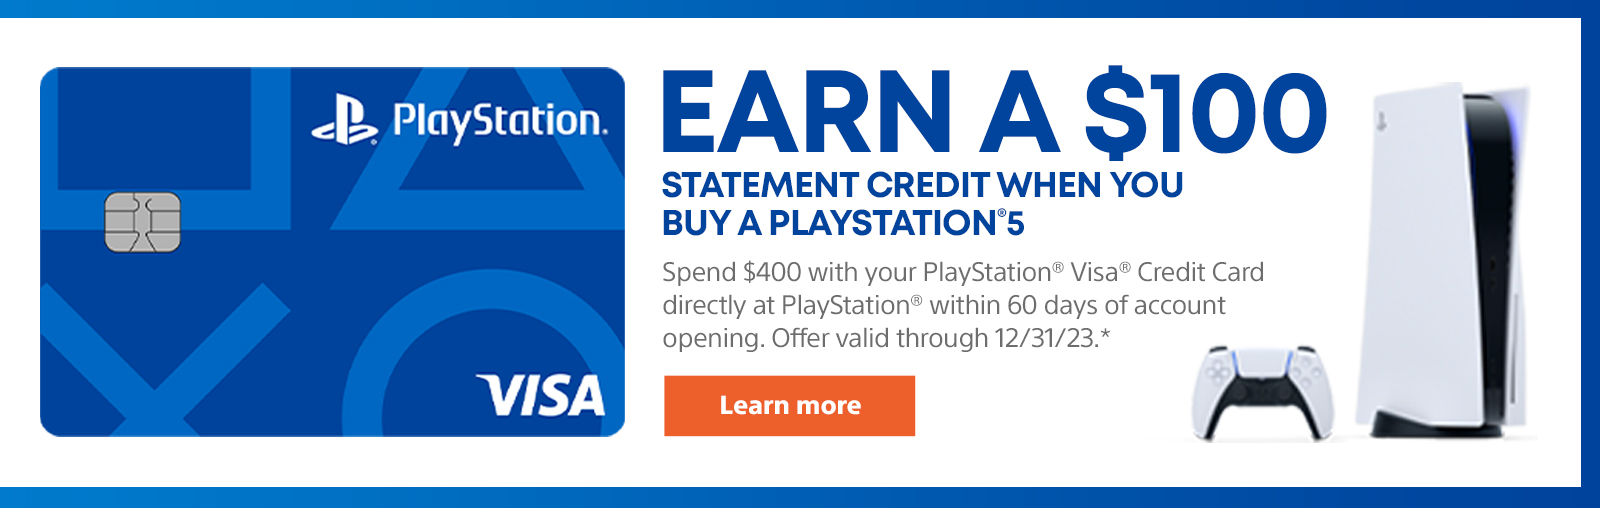 Câștigați un credit de 100 USD atunci când cumpărați un PlayStation 5. Utilizați cardul de credit PlayStation Visa pentru a cheltui 400 USD direct la PlayStation în termen de 60 de zile de la deschiderea contului. Oferta valabilă până la 31/12/23